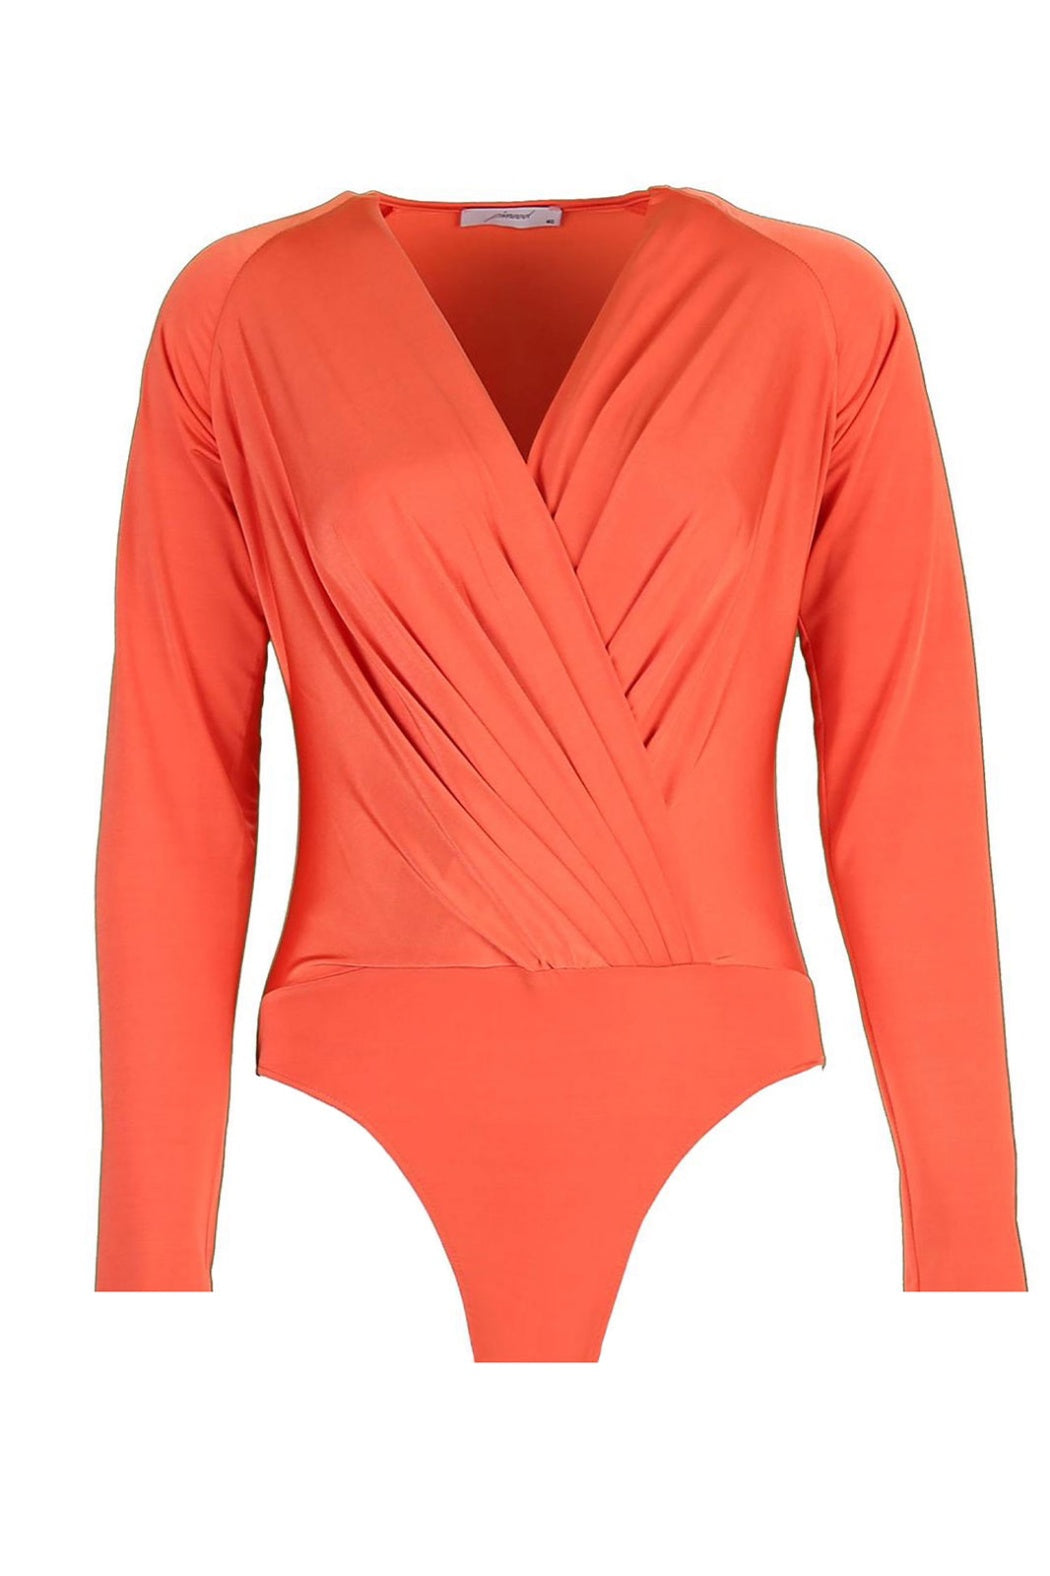 Carol Orange Double Breasted Neck Long Sleeve Bodysuit